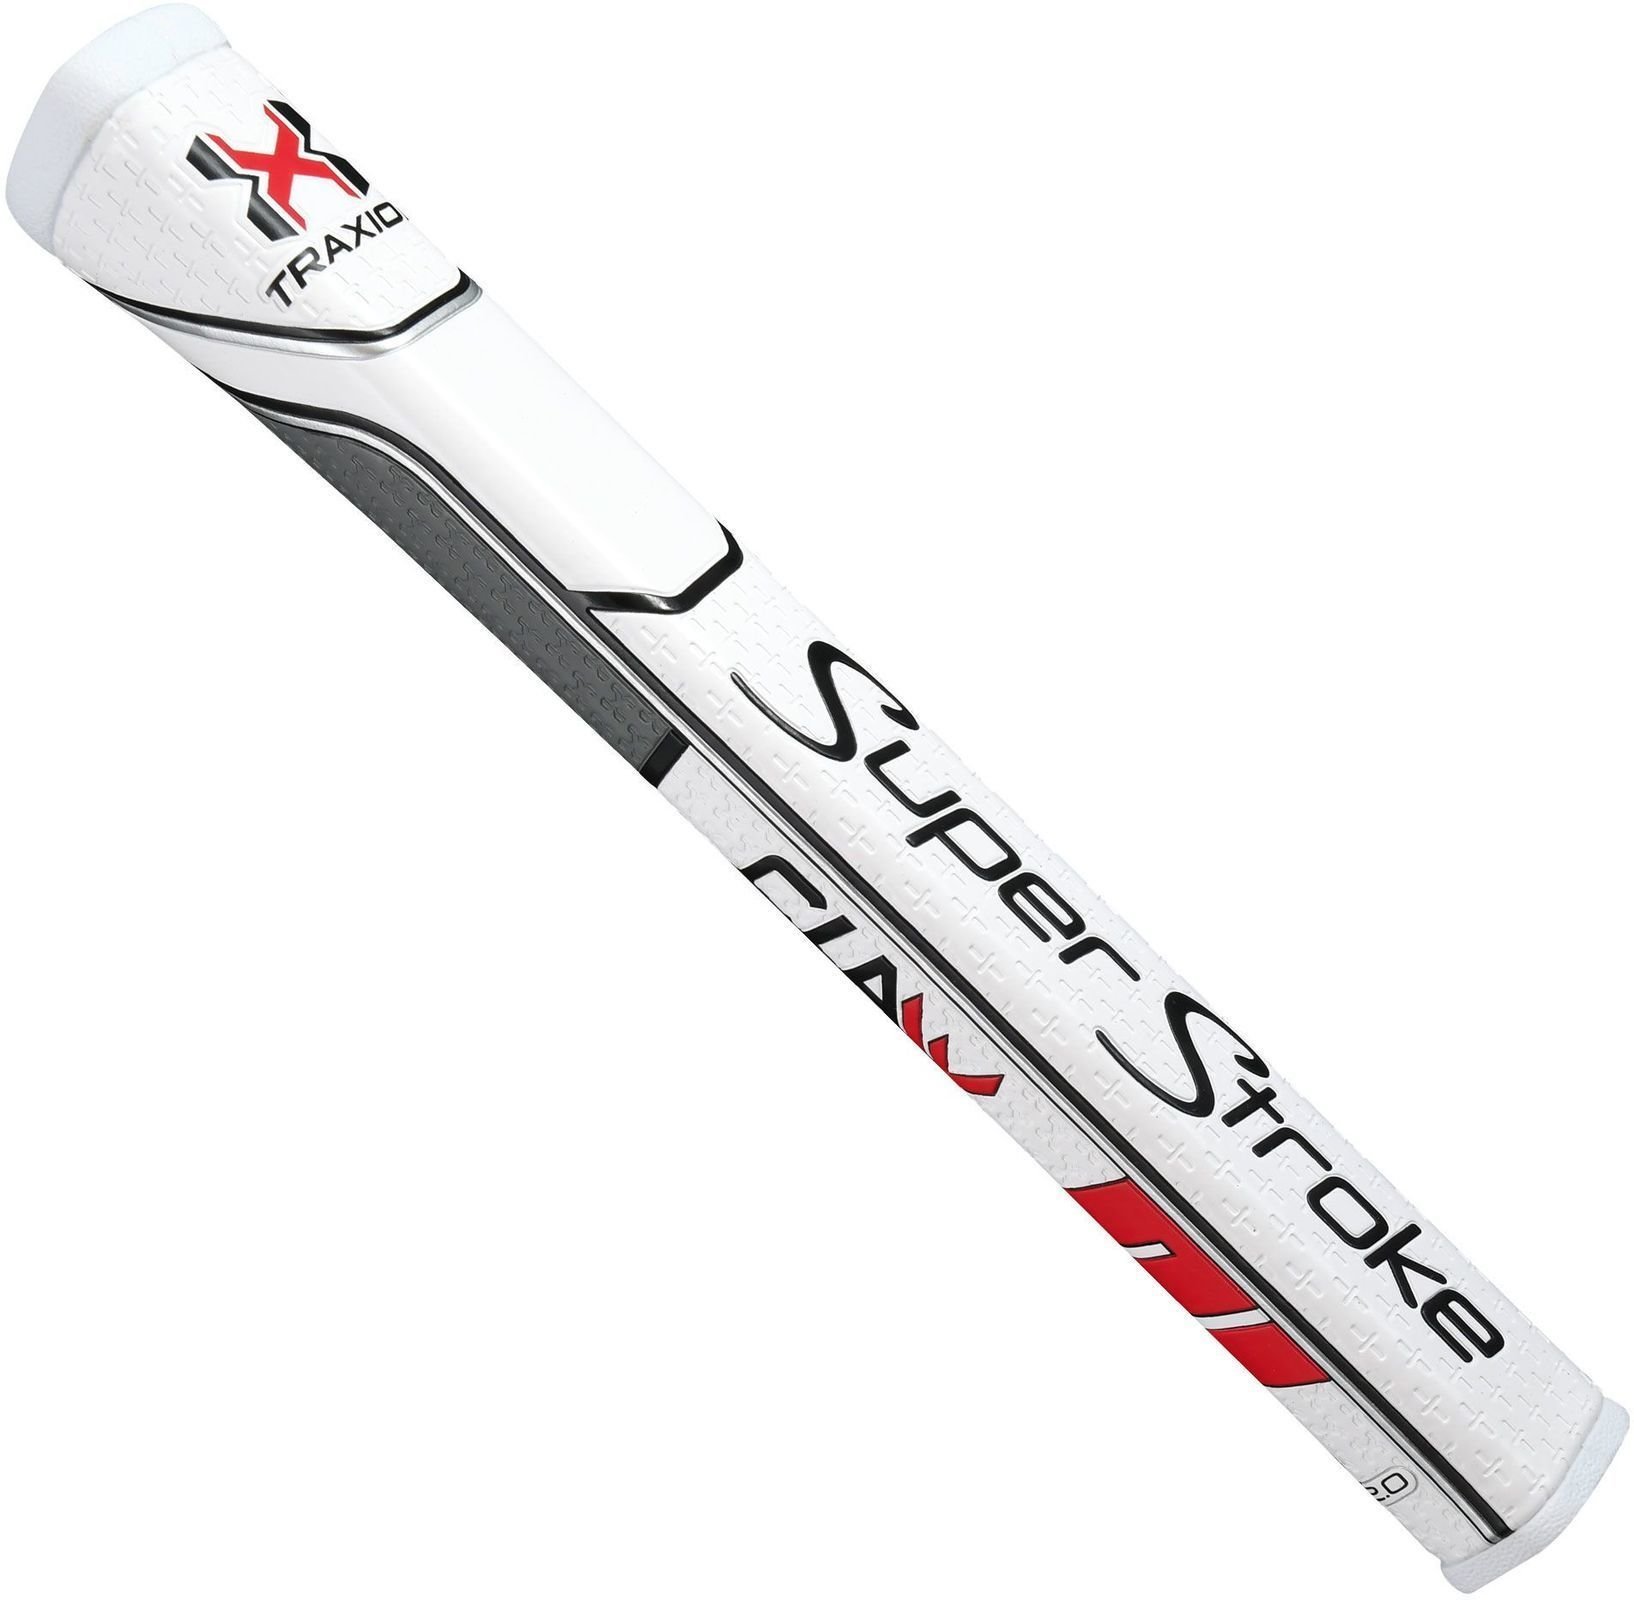 Golfschlägergriff Superstroke Traxion Claw 2.0 Putter Grip White/Red